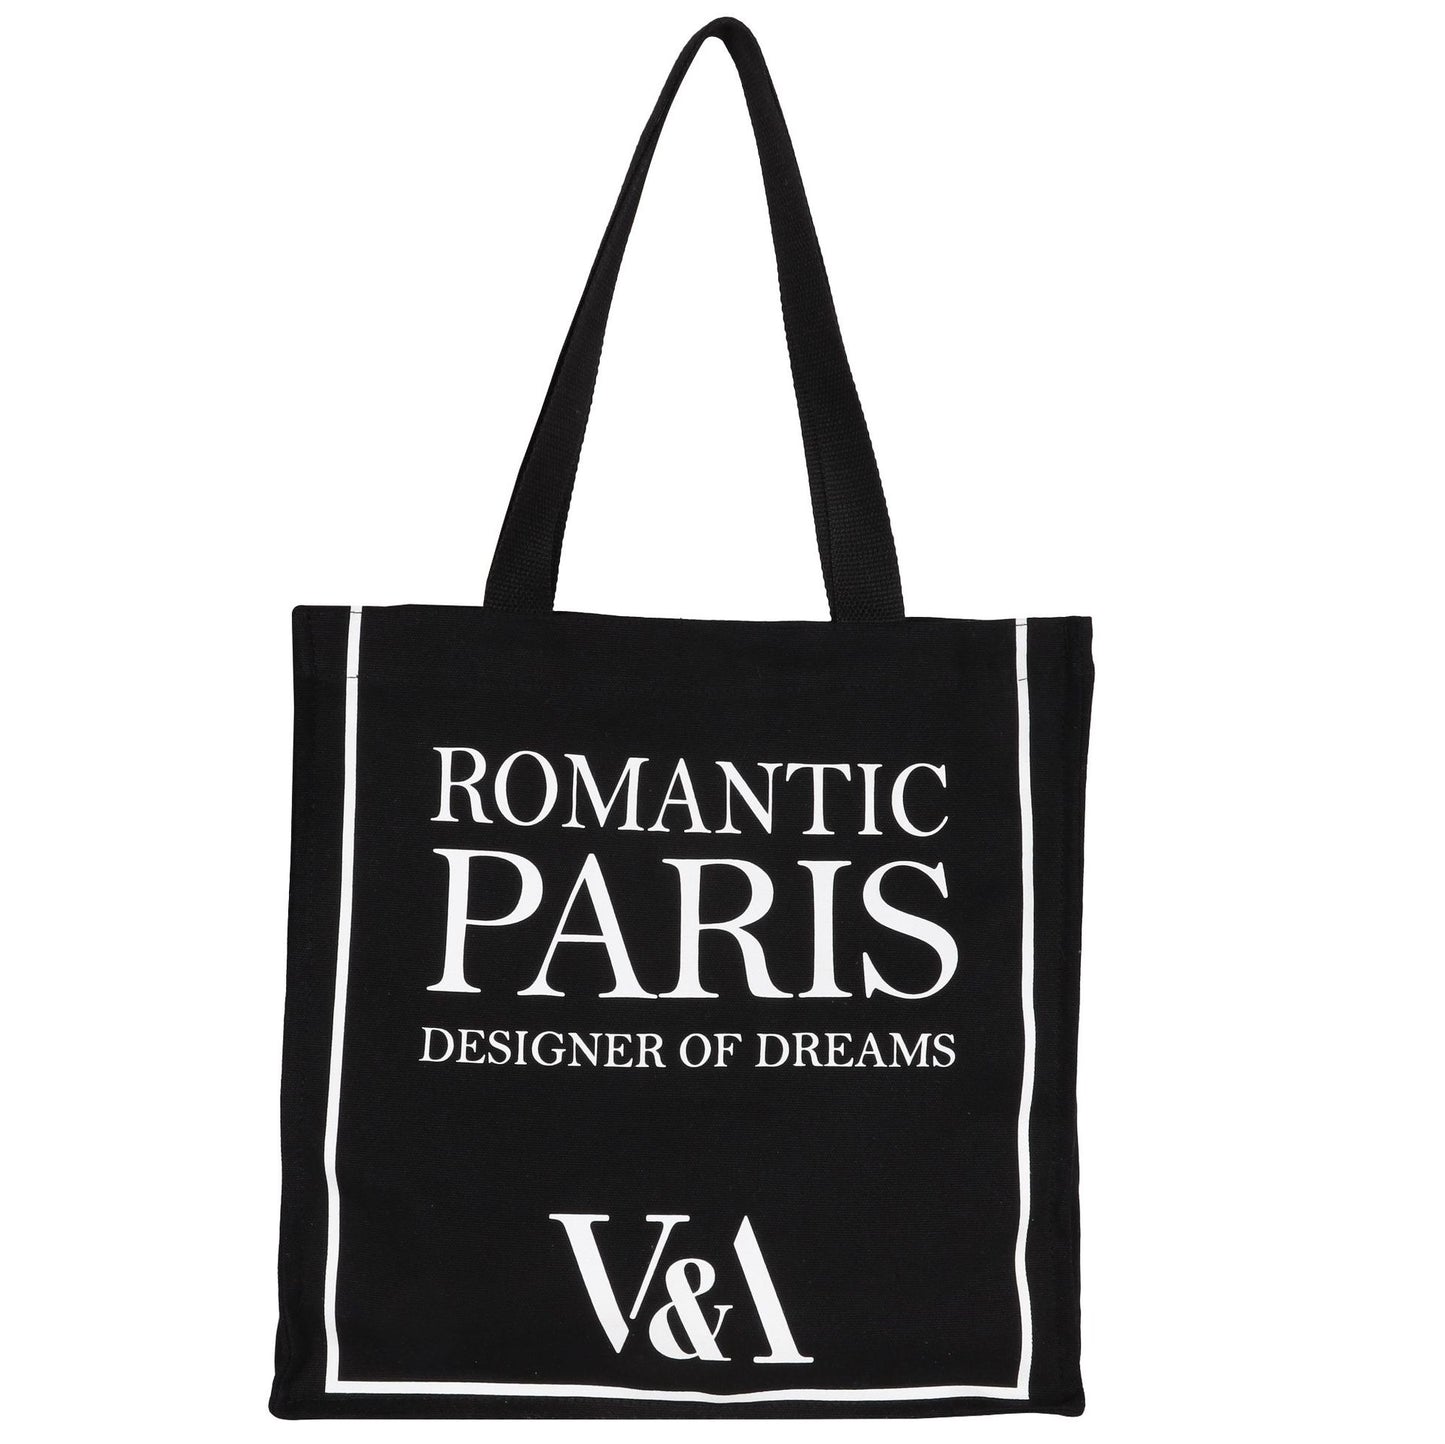 Paris Tote Bag